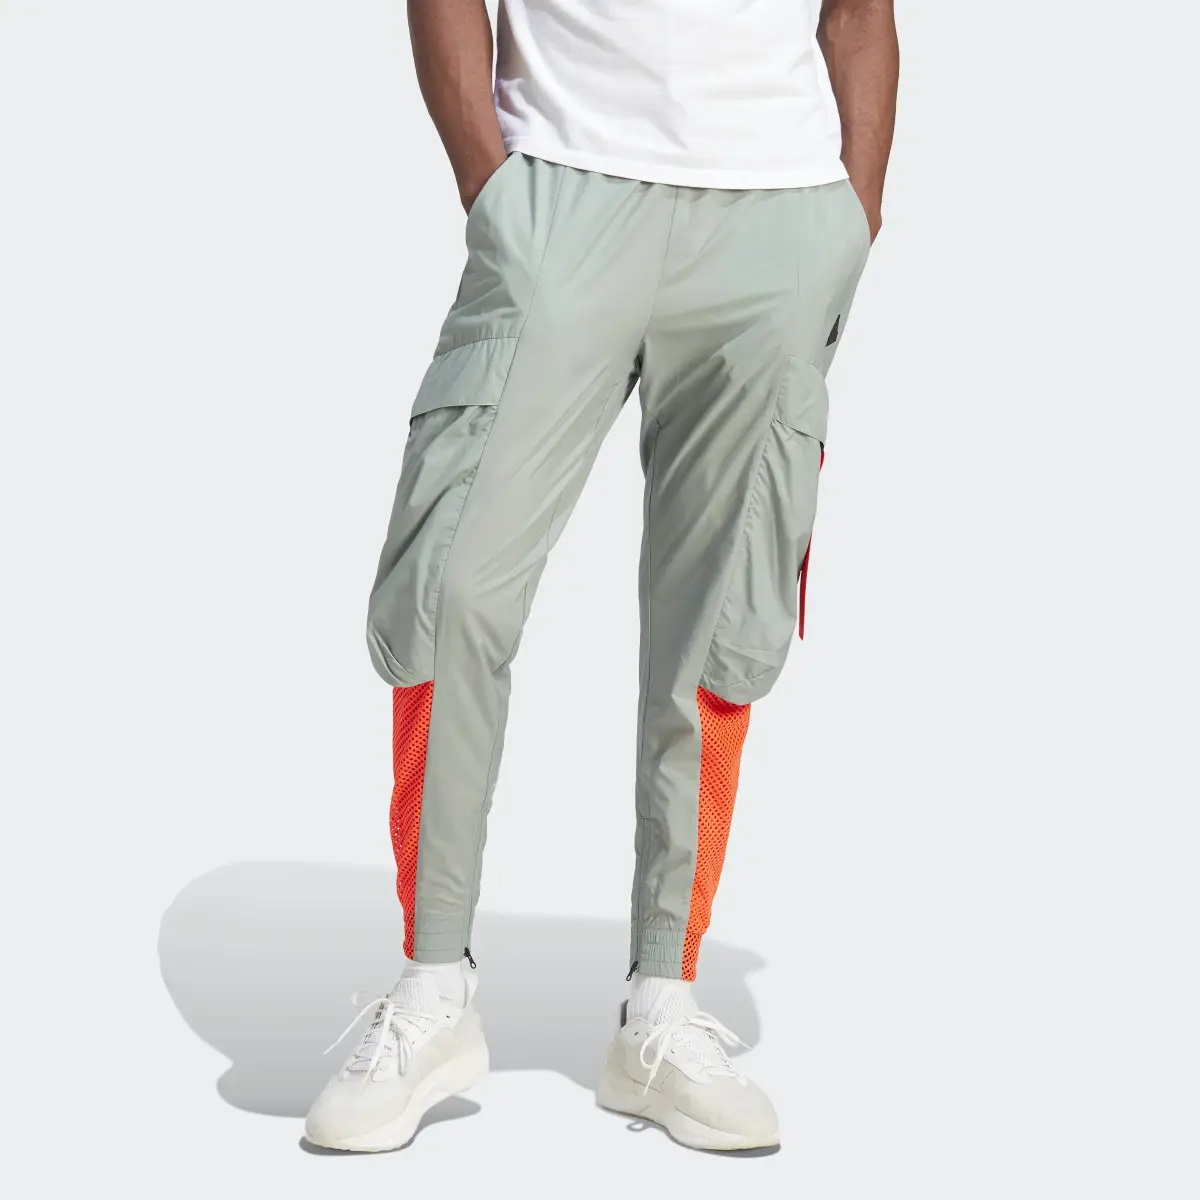 Adidas City Escape Premium Pants. 1